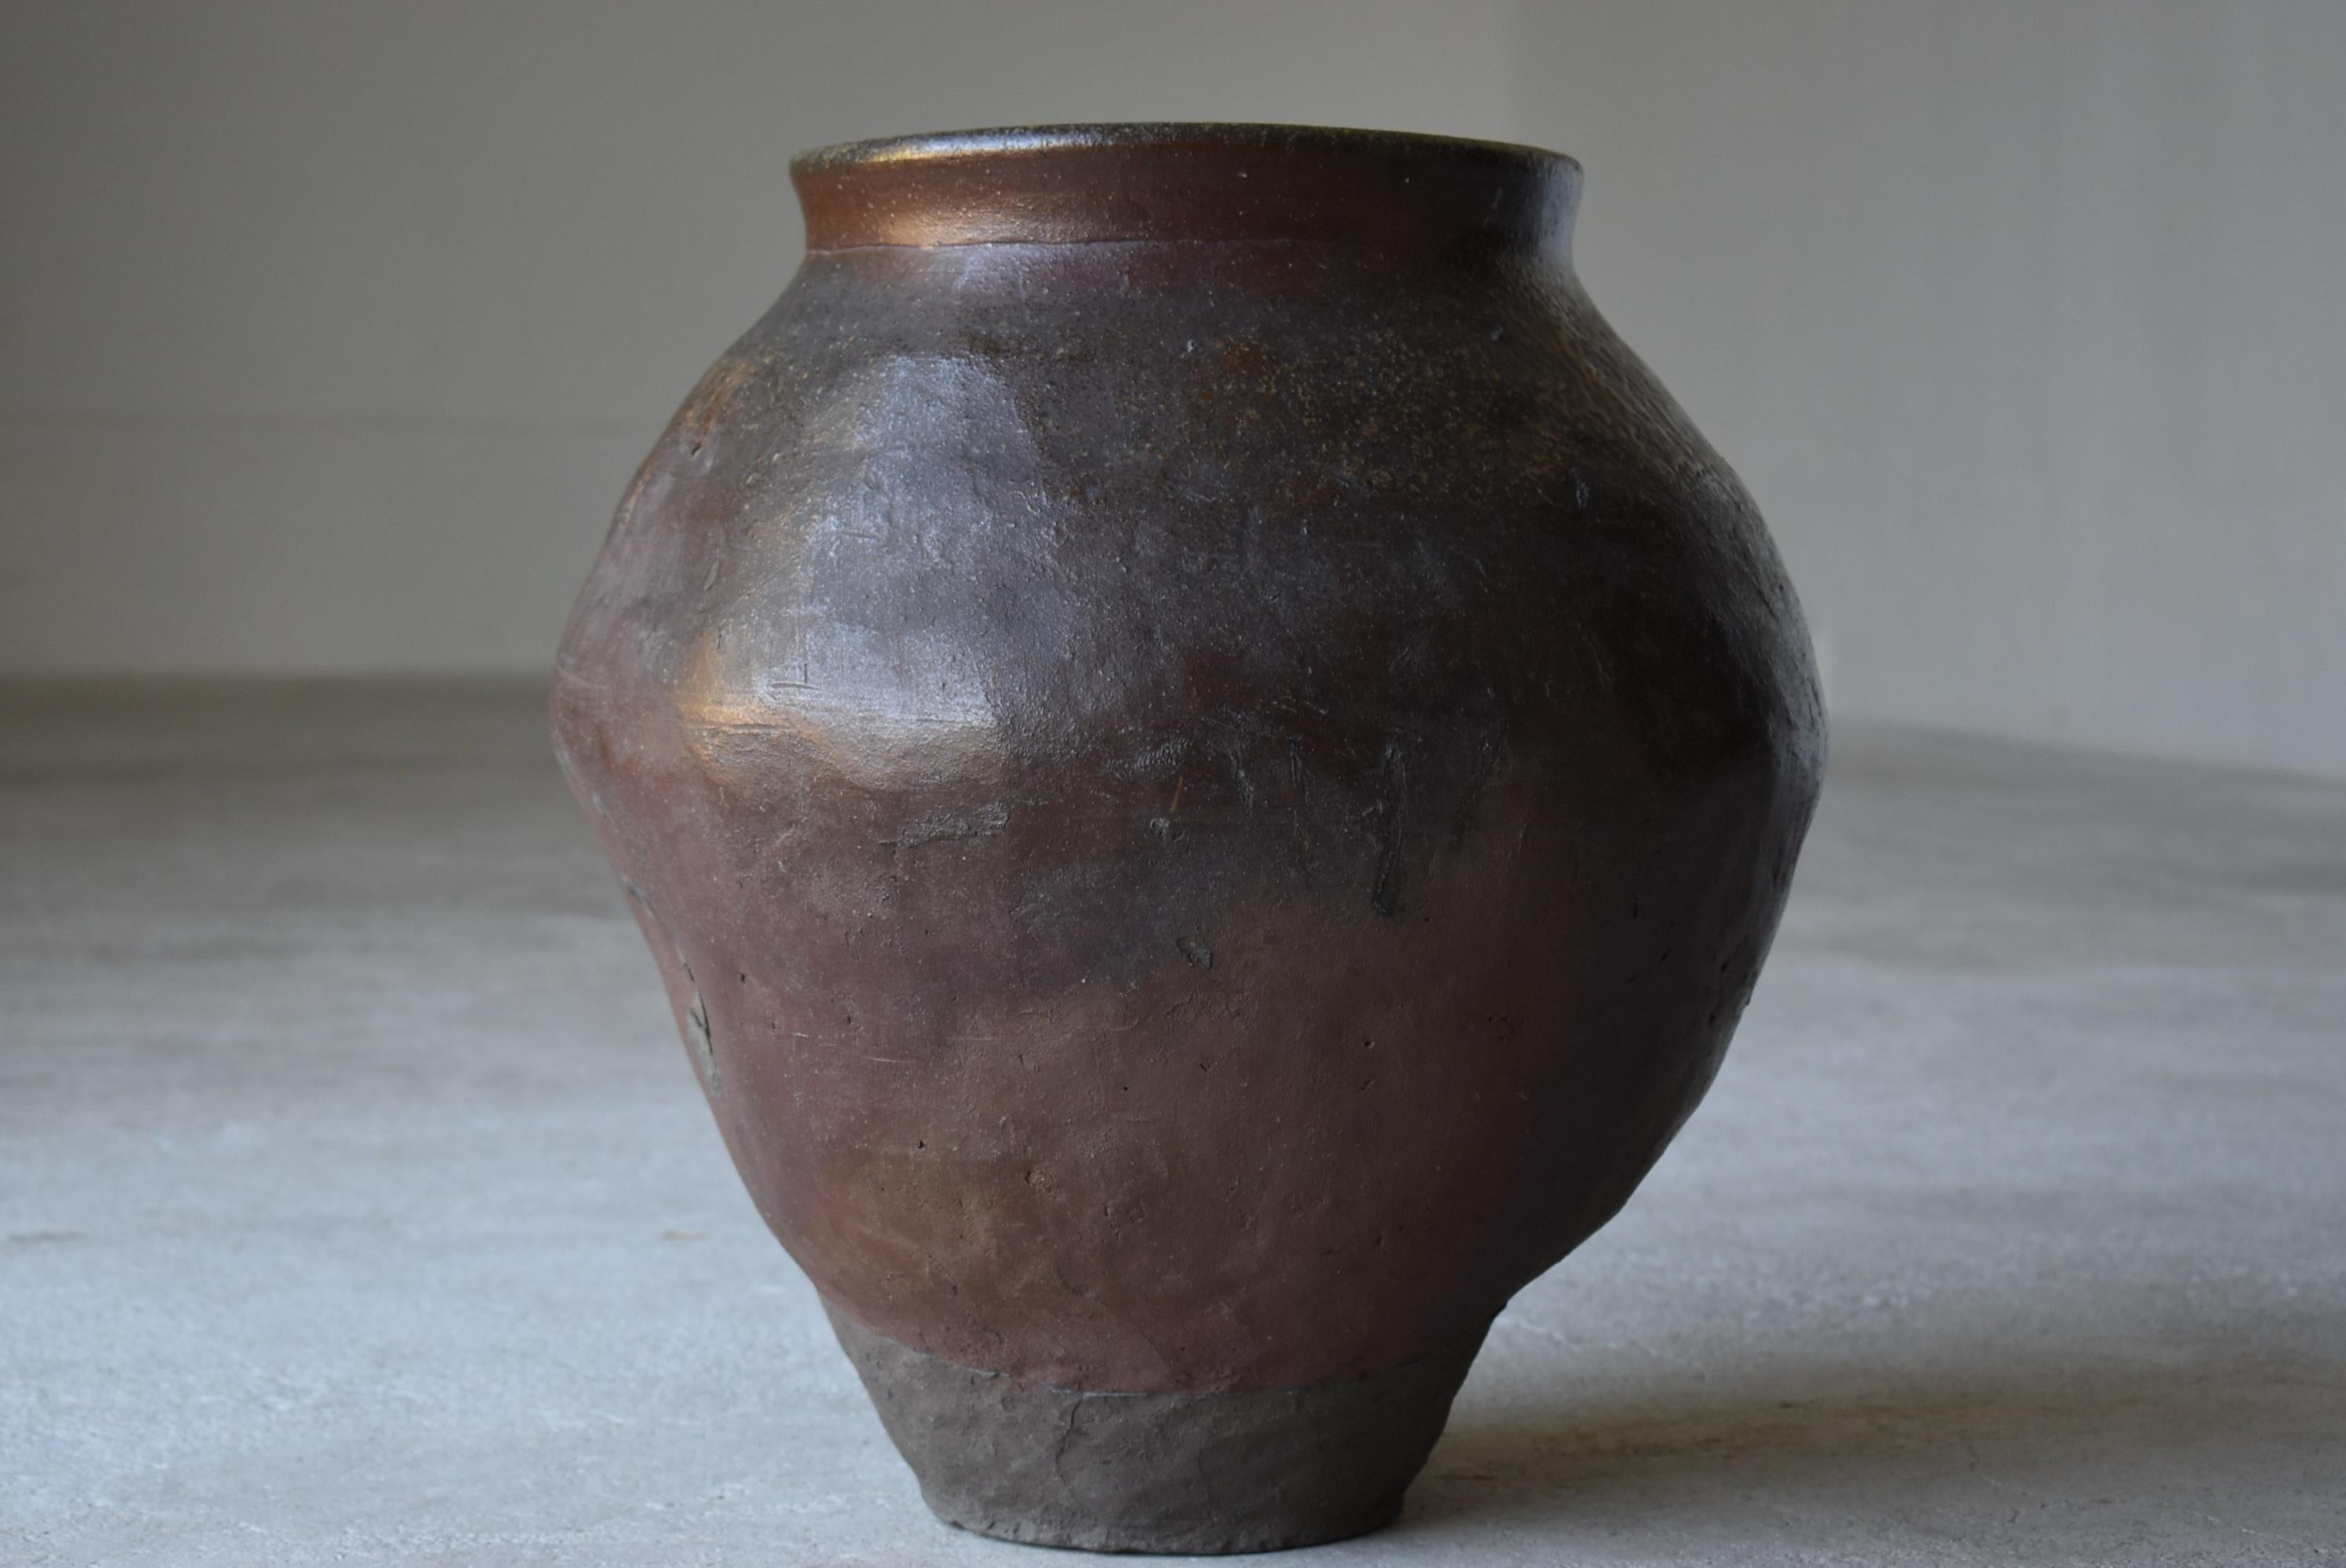 Japanese Old Pottery 1700s-1800s/Antique Flower Vase Vessel Jar Tsubo Wabisabi 4